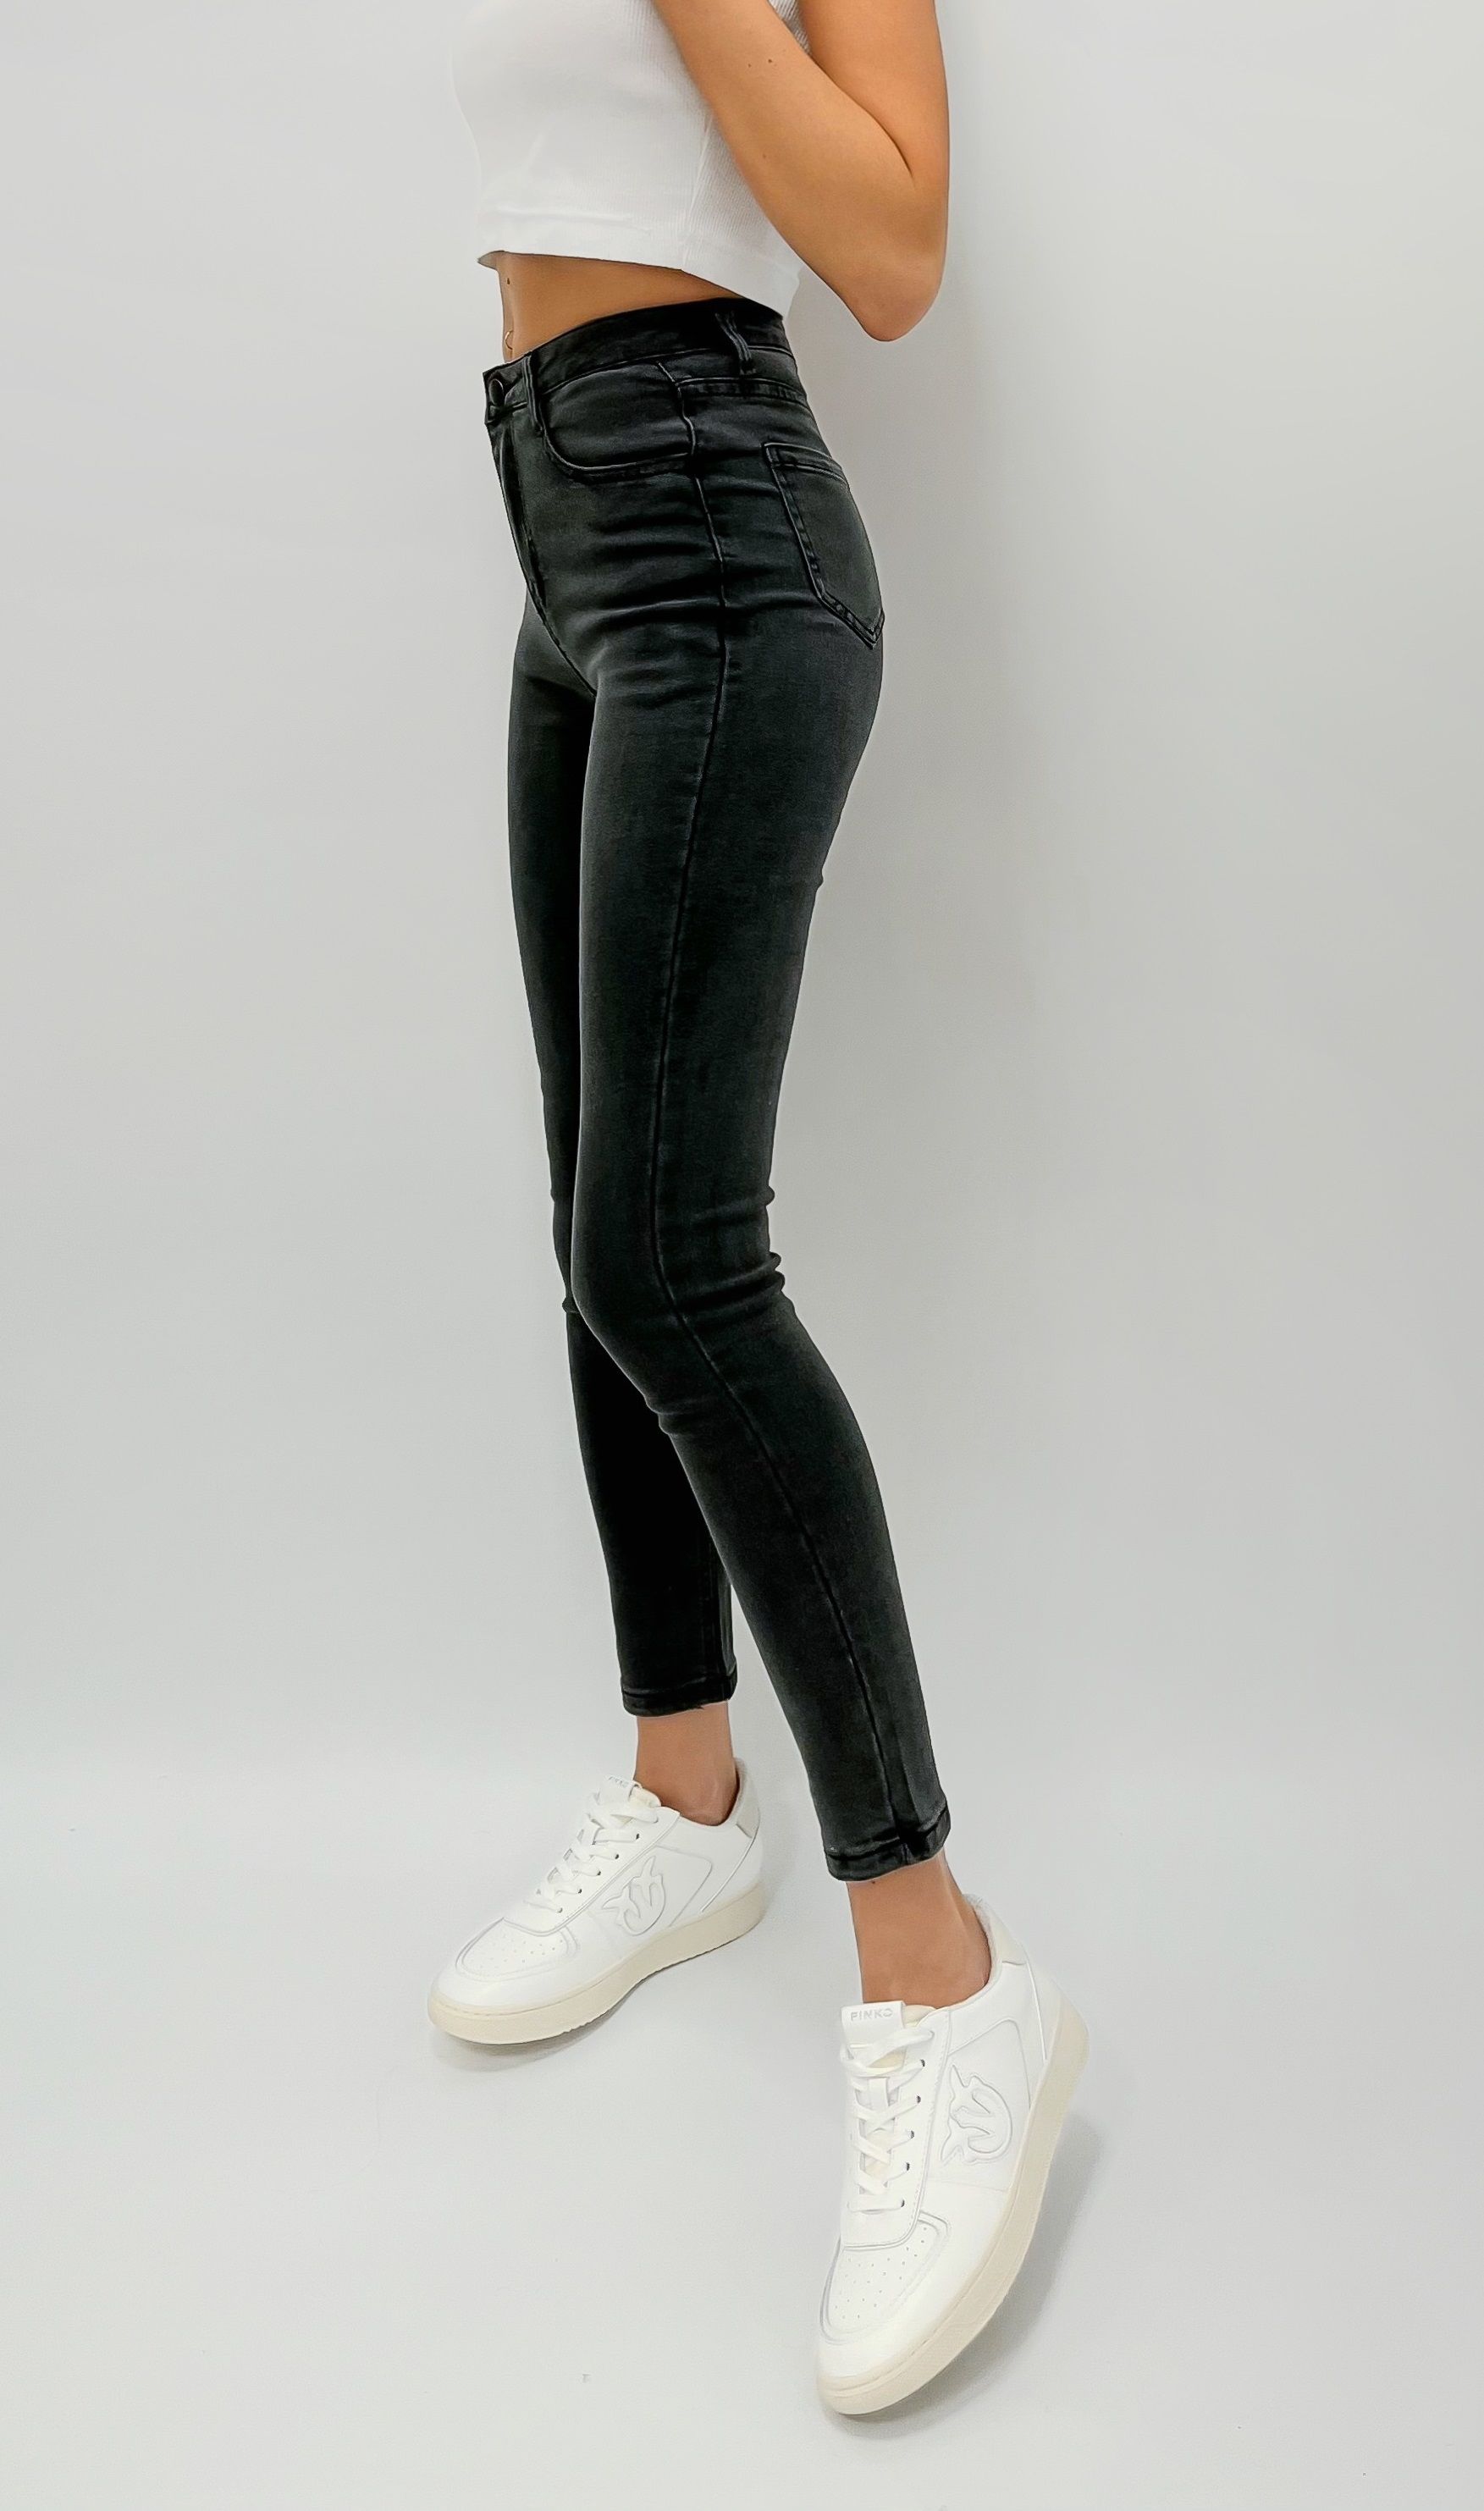 Фотография на тему Красивая девушка в черных джинсах | PressFoto